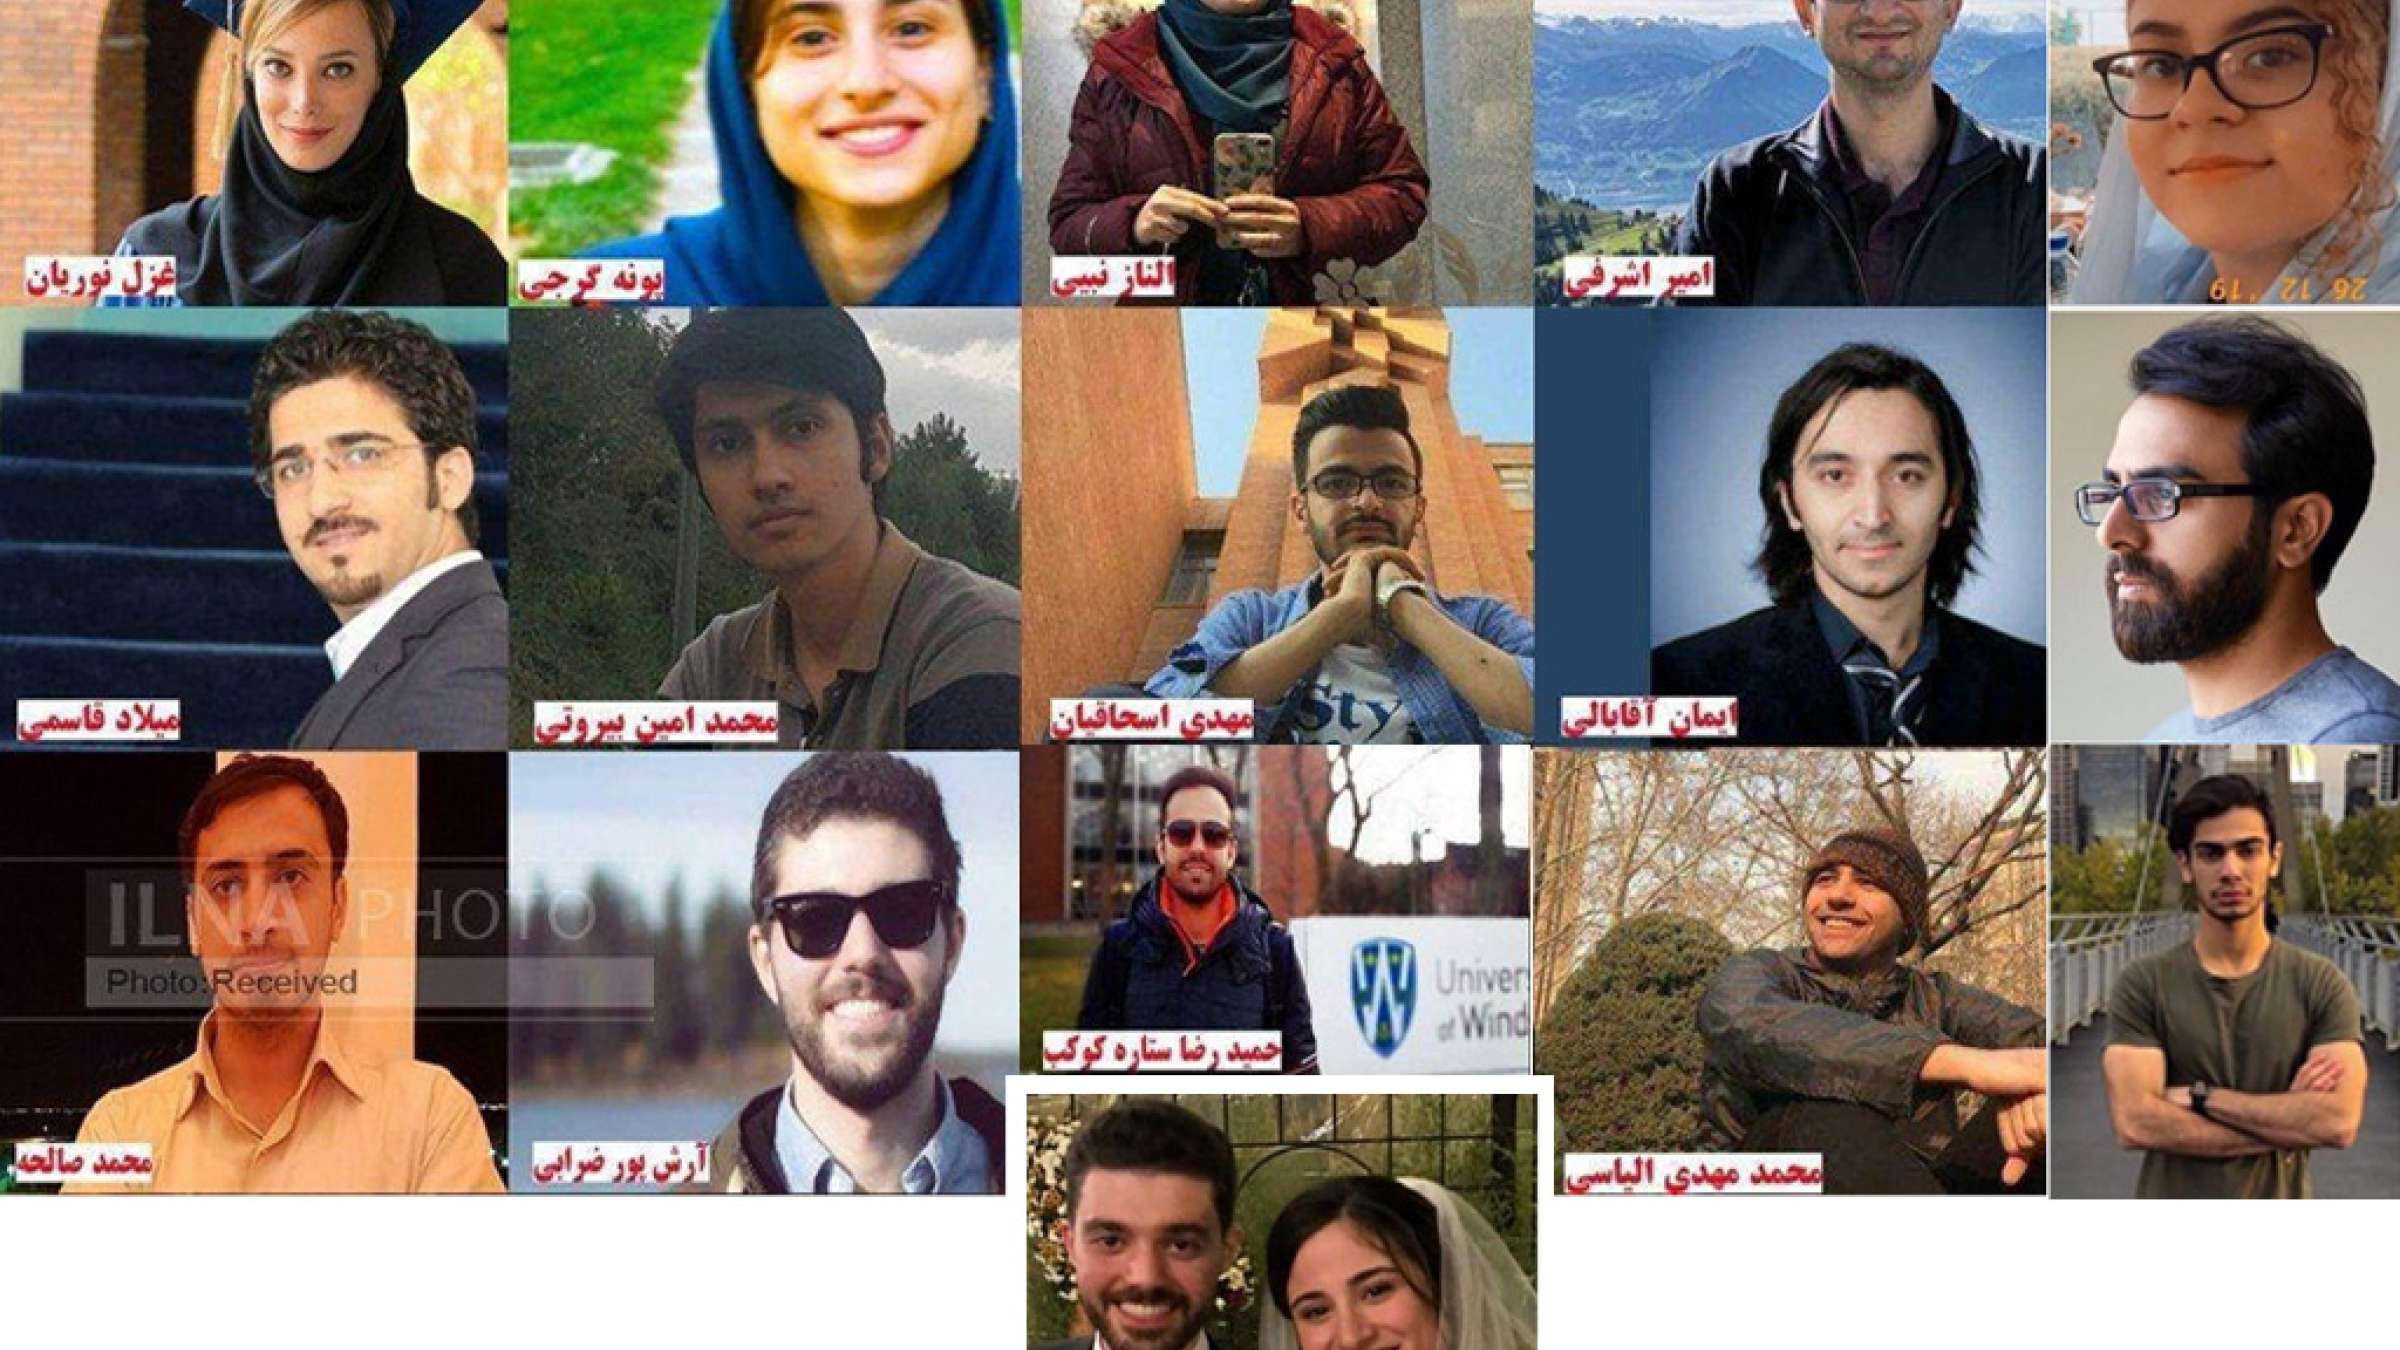 اخبار-ایران-اسامی-درگذشتگان-سقوط-هواپیمای-بوئینگ-اوکراین-در-تهران